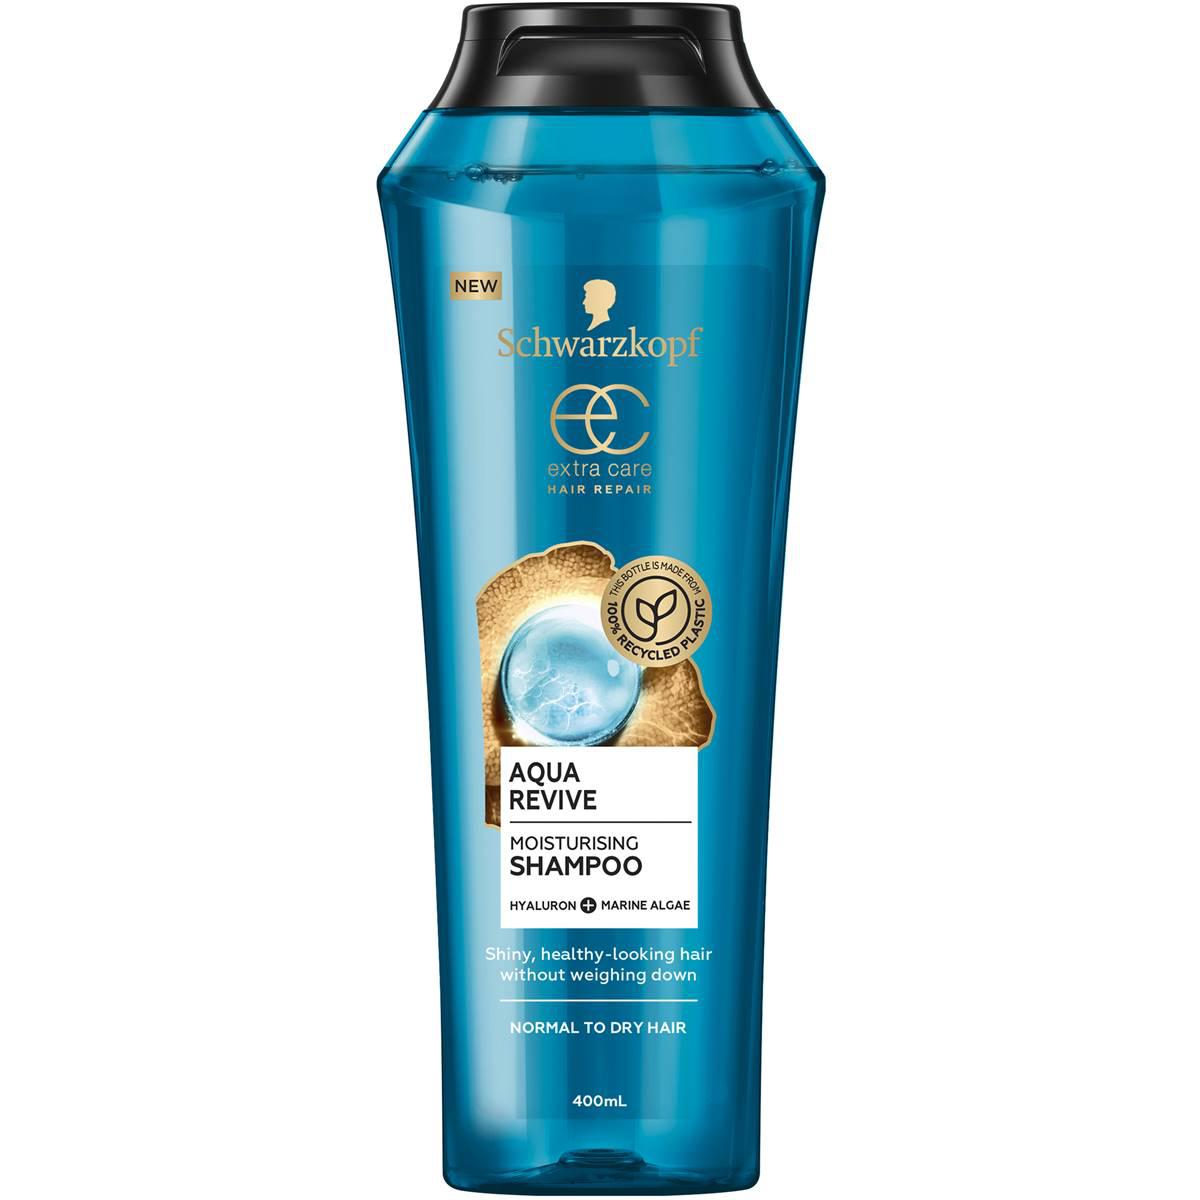 Schwarzkopf Extra Care Aqua Revive Moisturising Shampoo 400ml